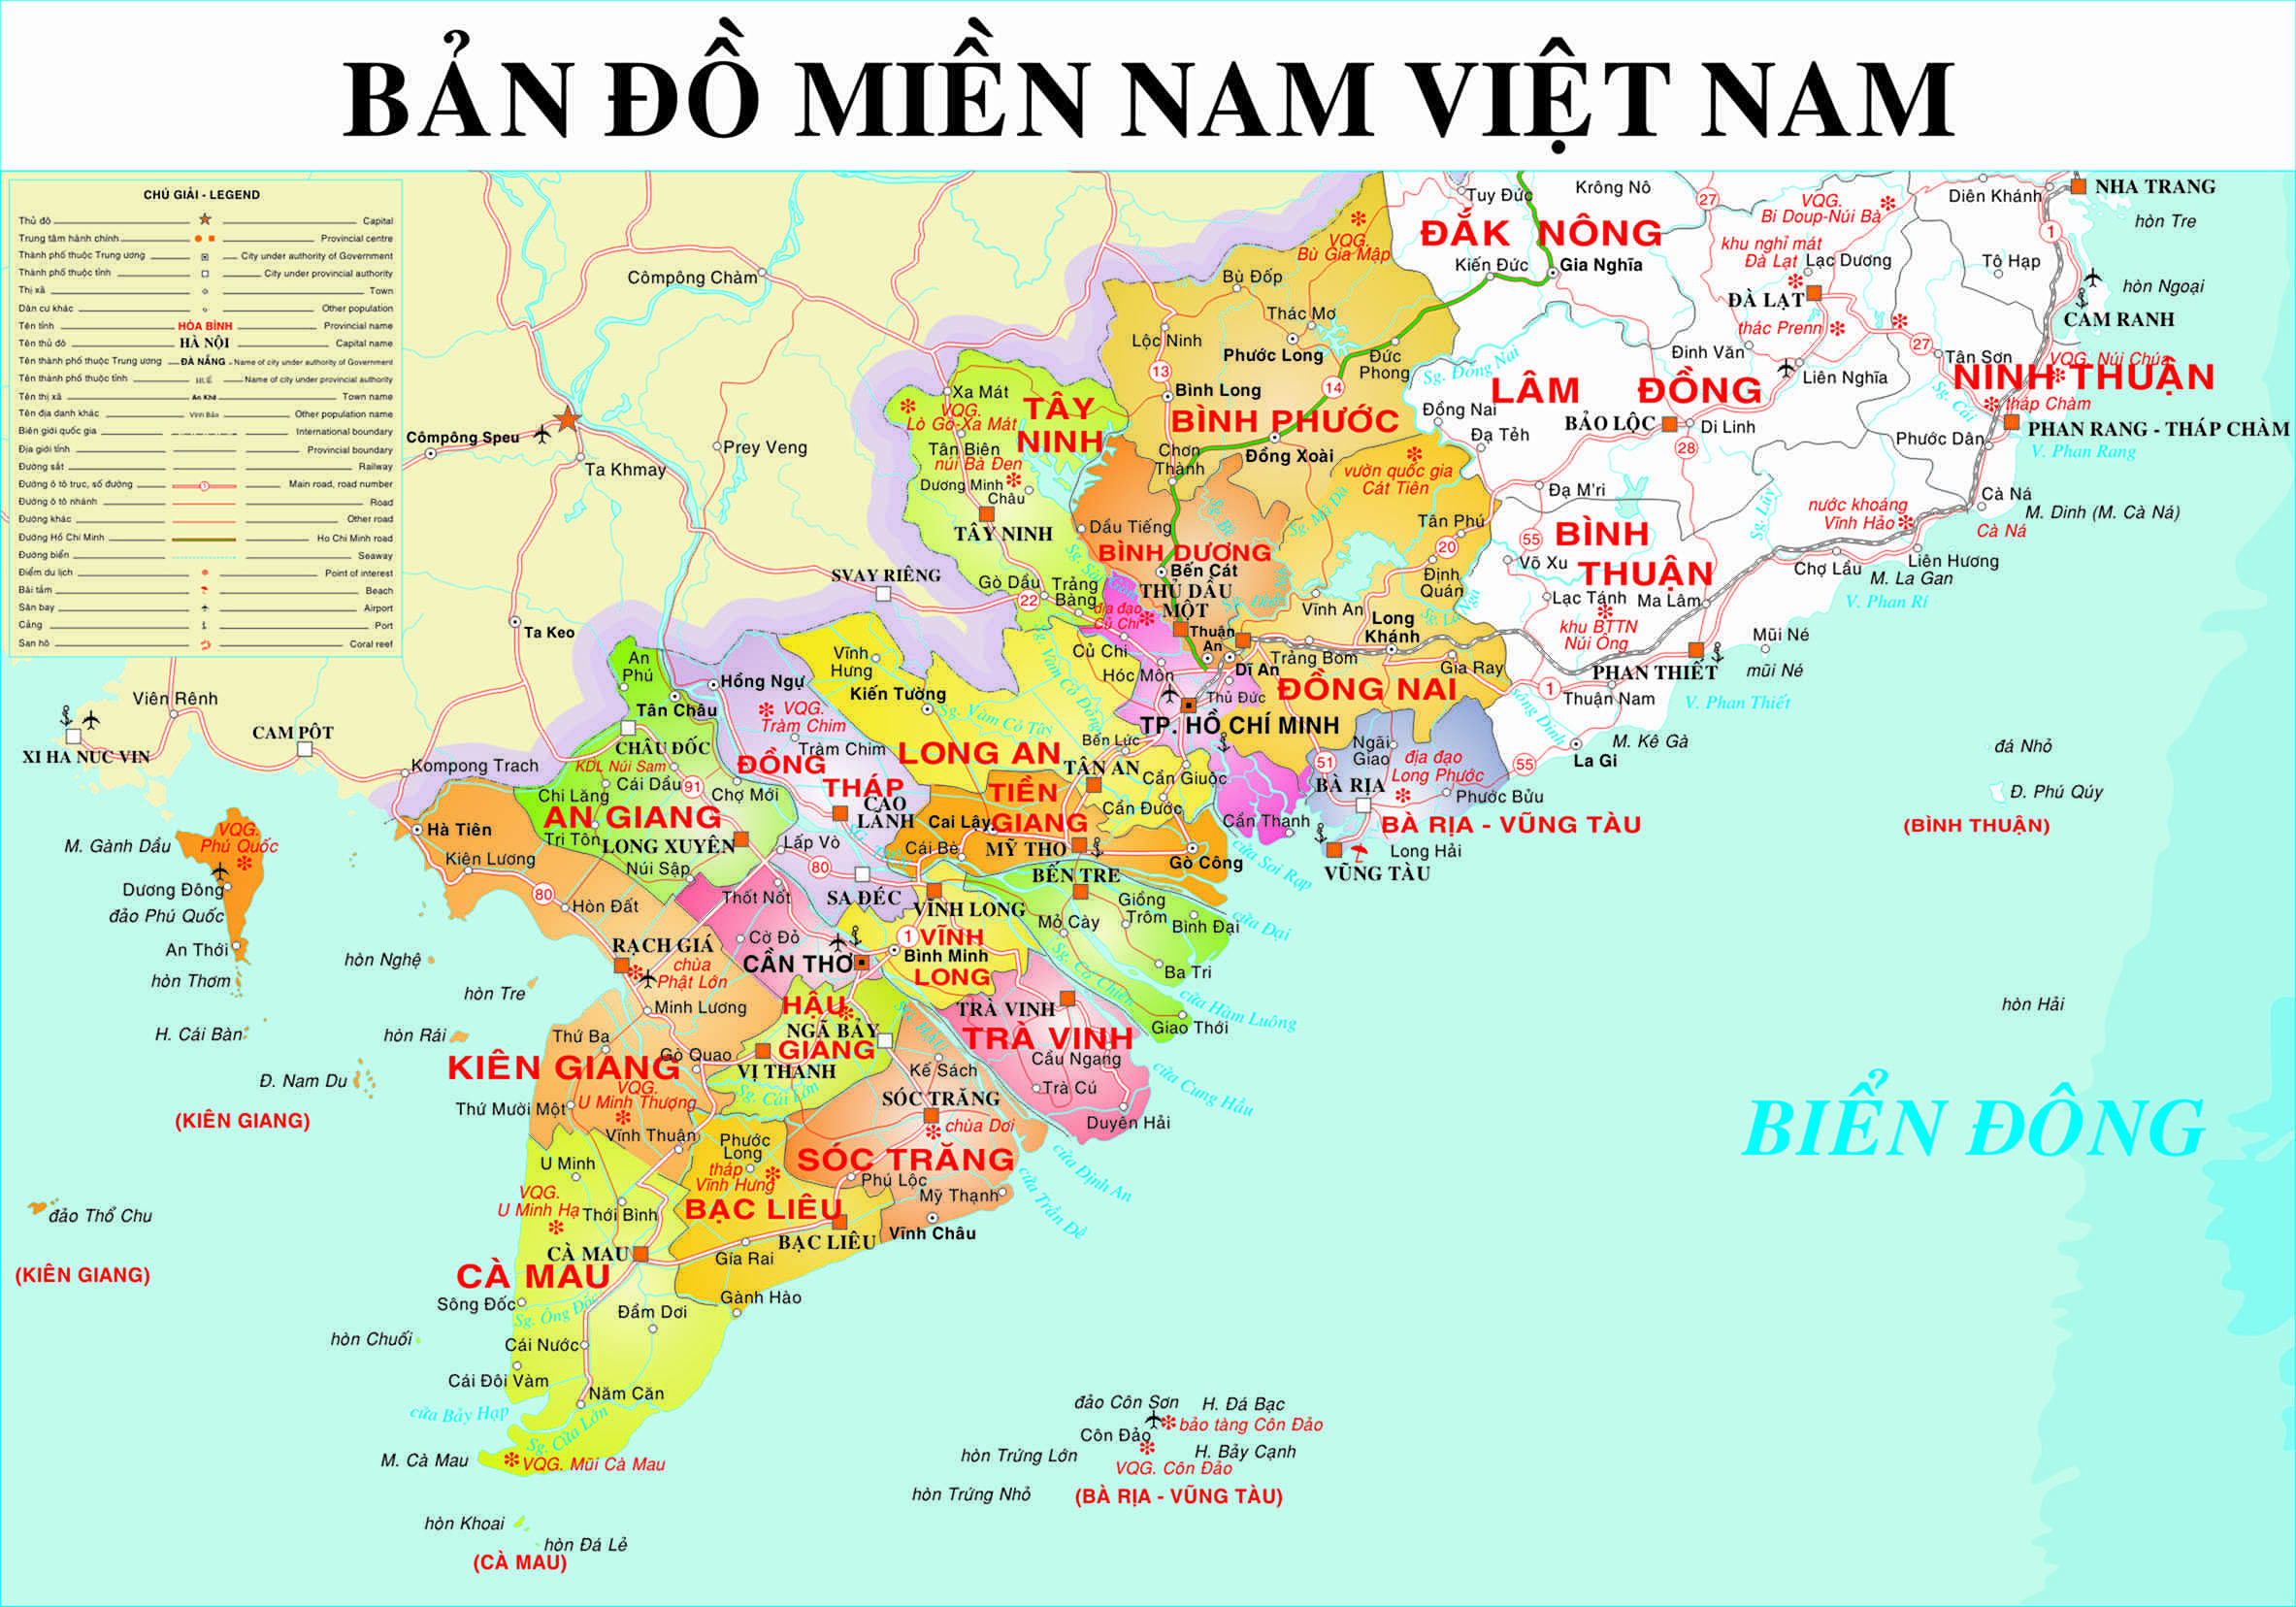 Tải bản đồ miền Nam (Nam Bộ) Việt Nam khổ lớn mới nhất 2024 để khám phá khu vực du lịch phong phú và đa dạng, từ thành phố Hồ Chí Minh đến thị xã Dương Đông tại Phú Quốc. Bản đồ cung cấp cho du khách toàn bộ thông tin cần thiết để khám phá địa điểm một cách dễ dàng và tiện lợi nhất.